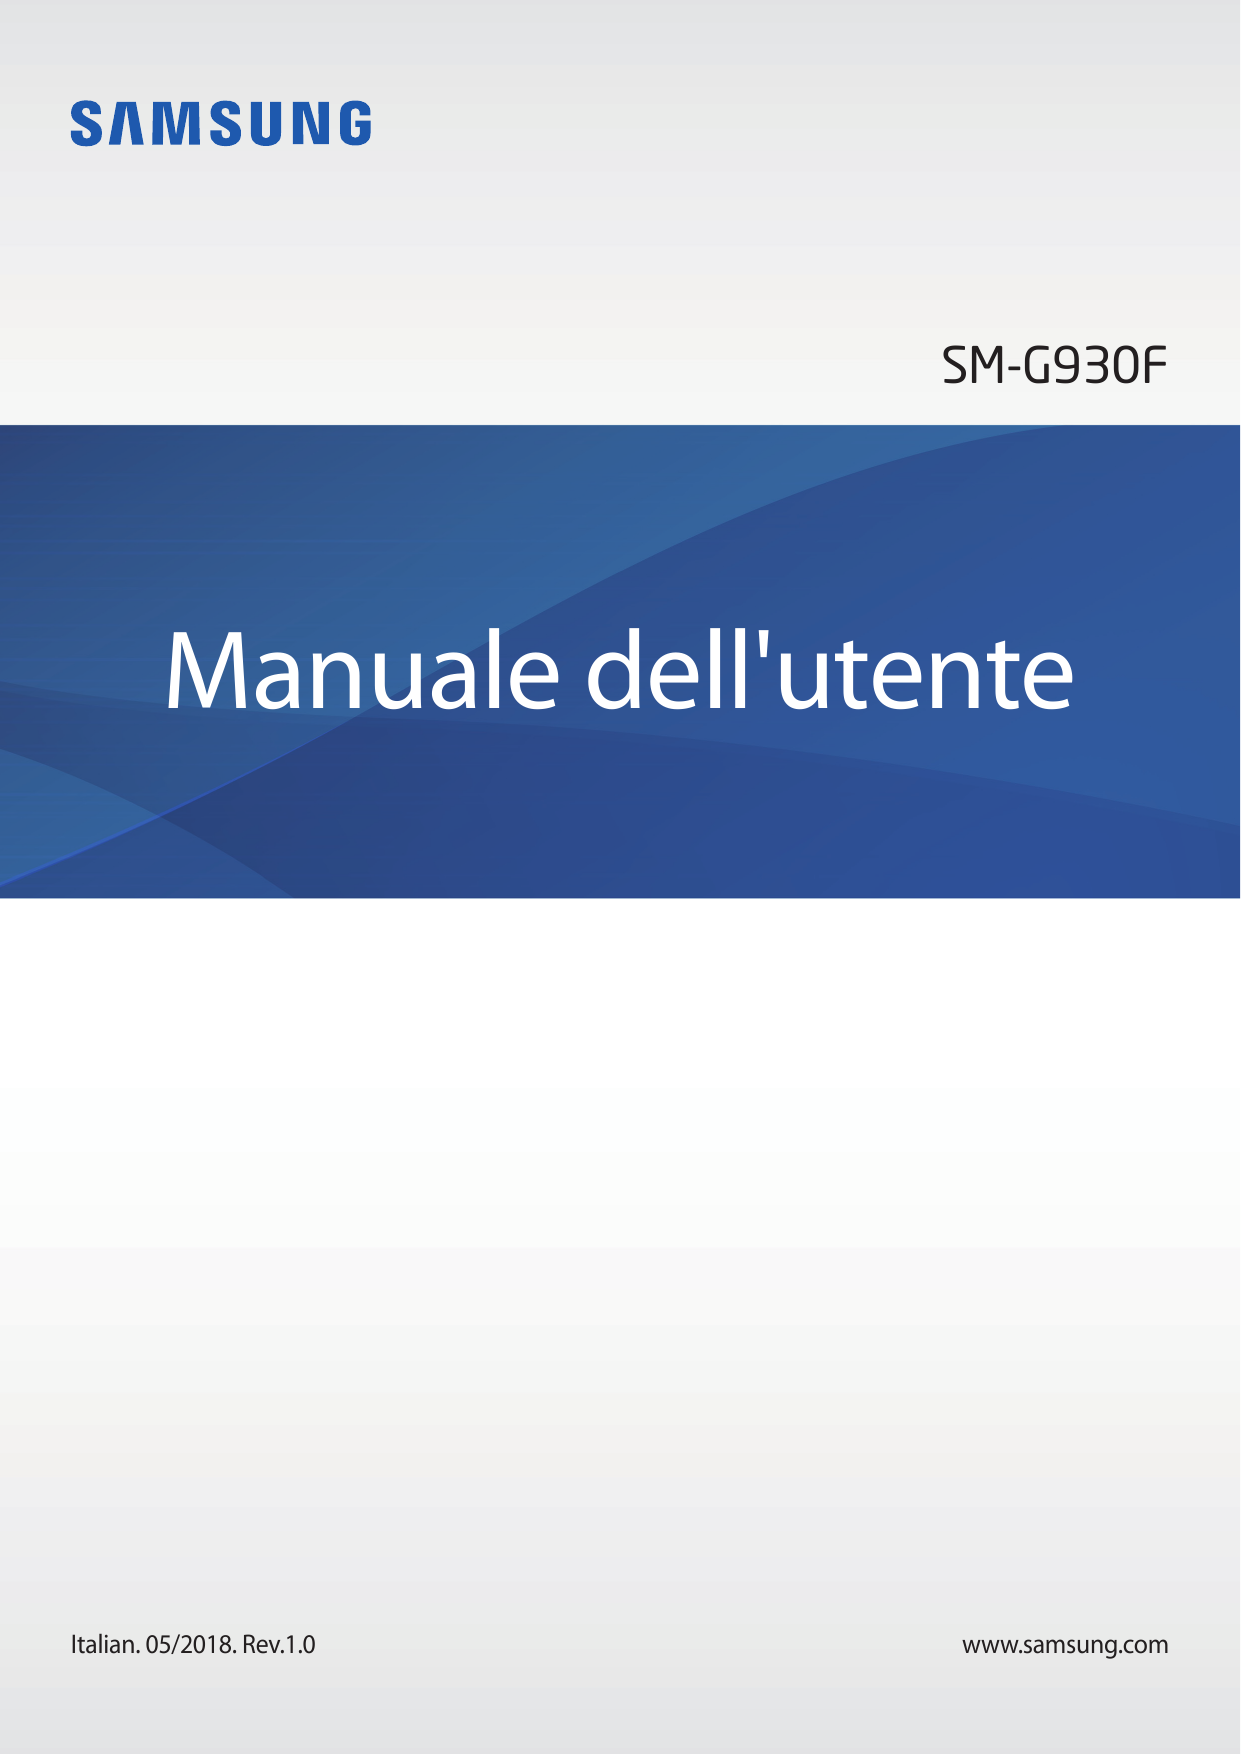 SM-G930FManuale dell'utenteItalian. 05/2018. Rev.1.0www.samsung.com